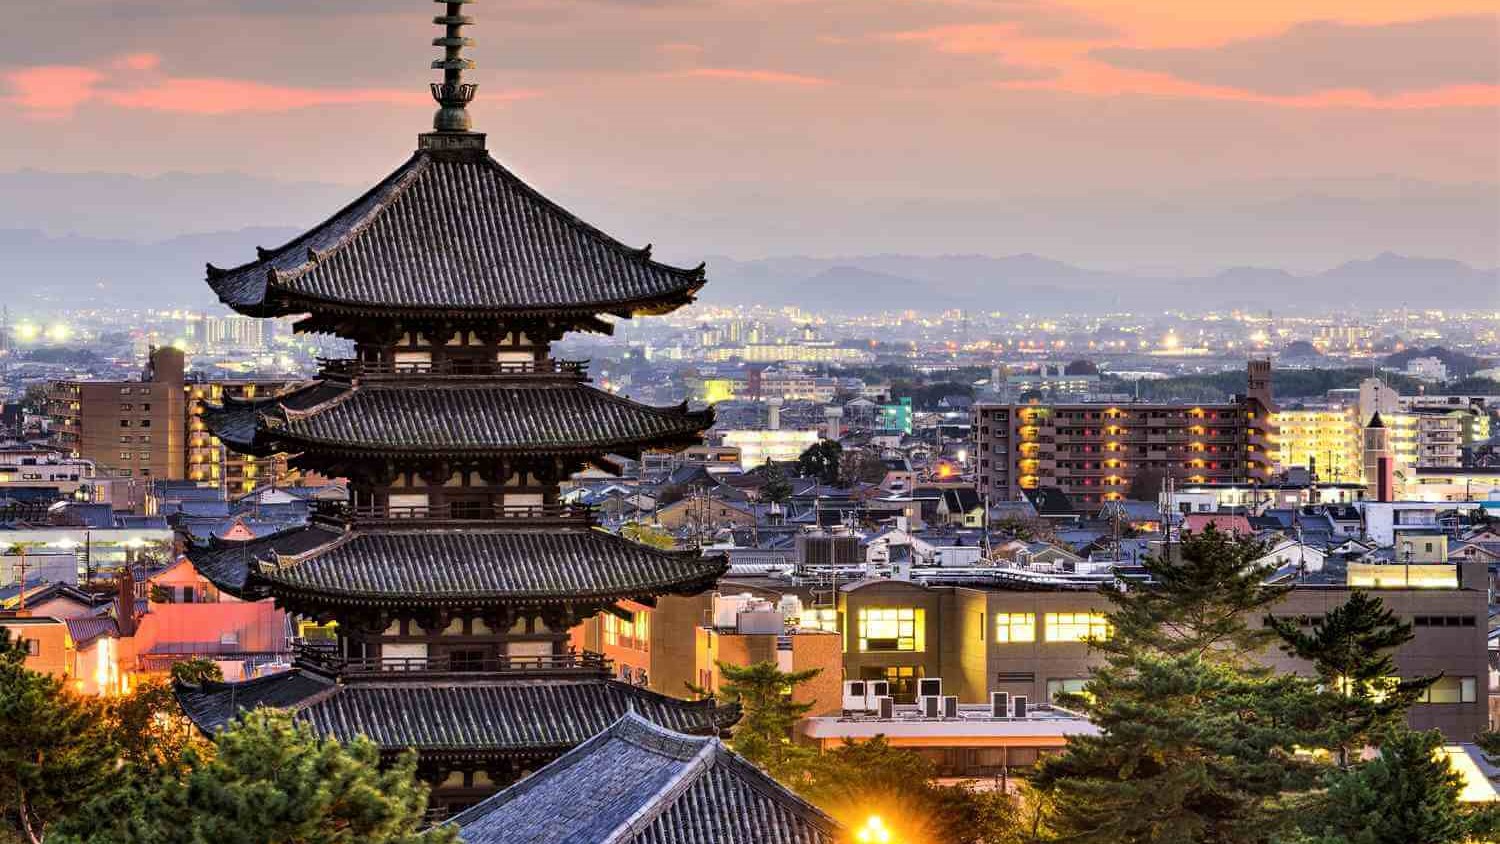 Photos: Nara -The ancient capital of Japan